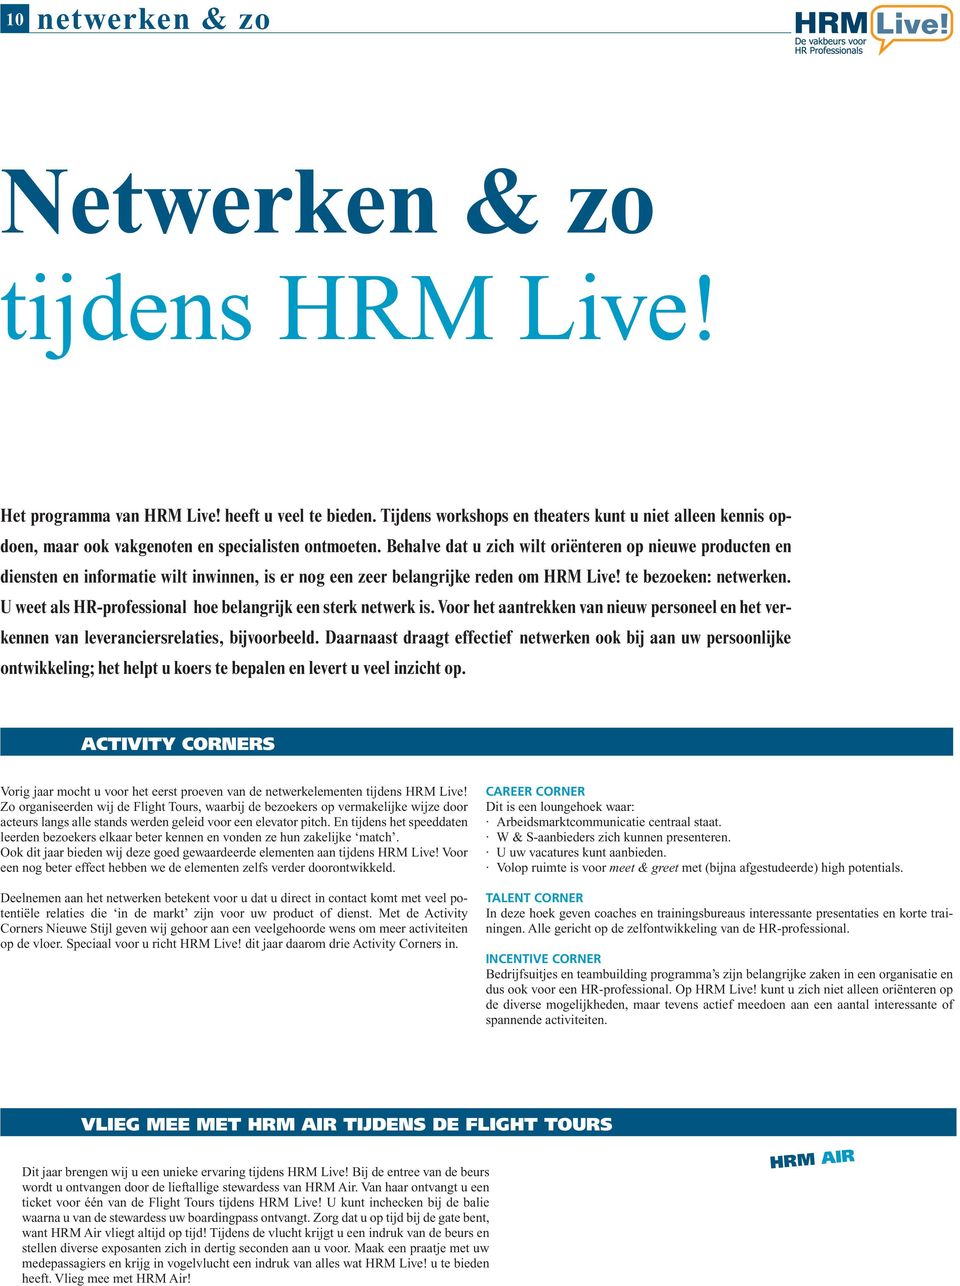 Behalve dat u zich wilt oriënteren op nieuwe producten en diensten en informatie wilt inwinnen, is er nog een zeer belangrijke reden om HRM Live! te bezoeken: netwerken.